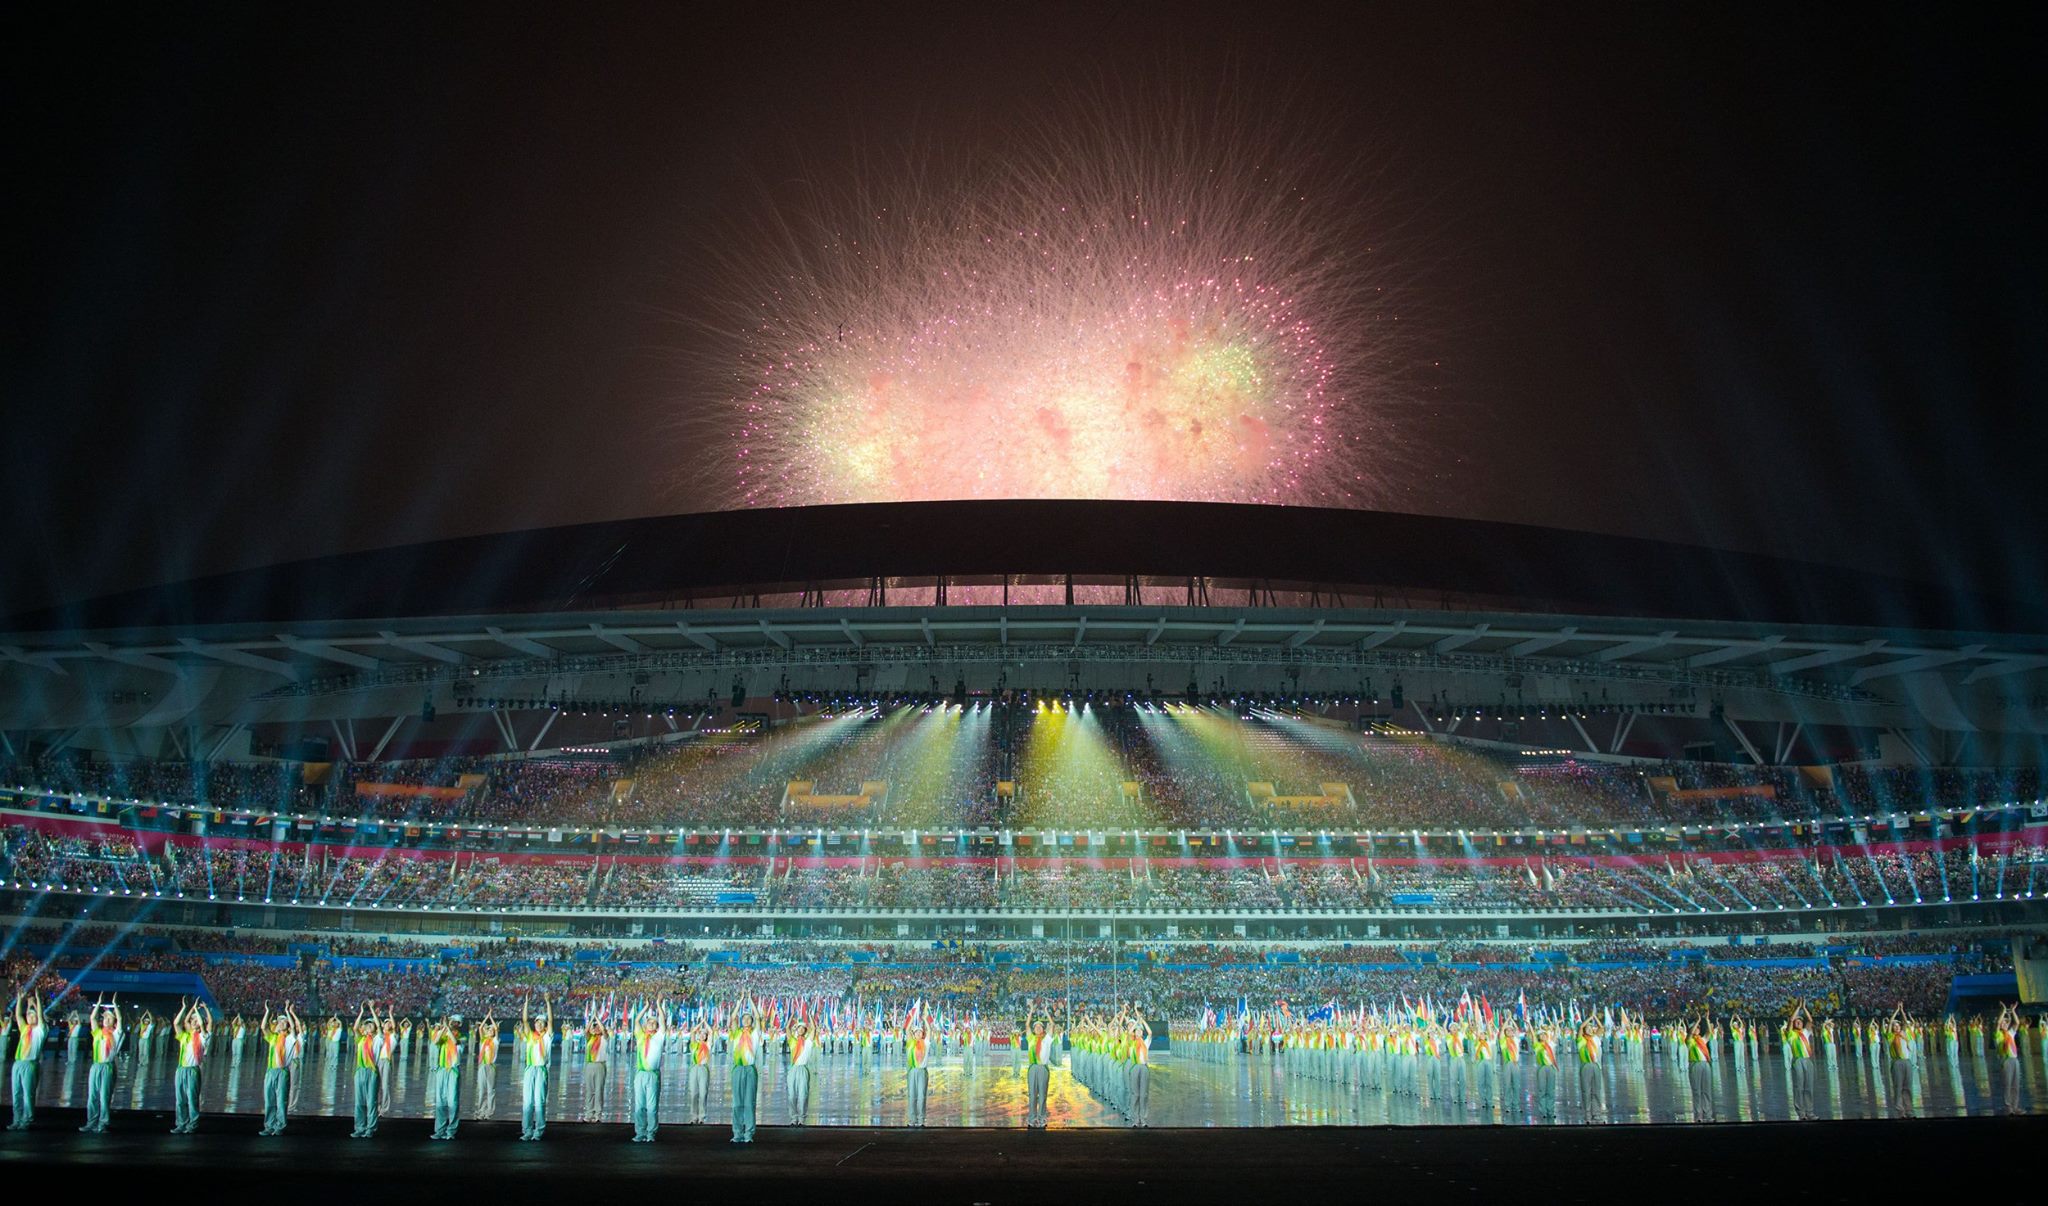 بالصور| افتتاح دورة الألعاب الأوليمبية للشباب في الصين